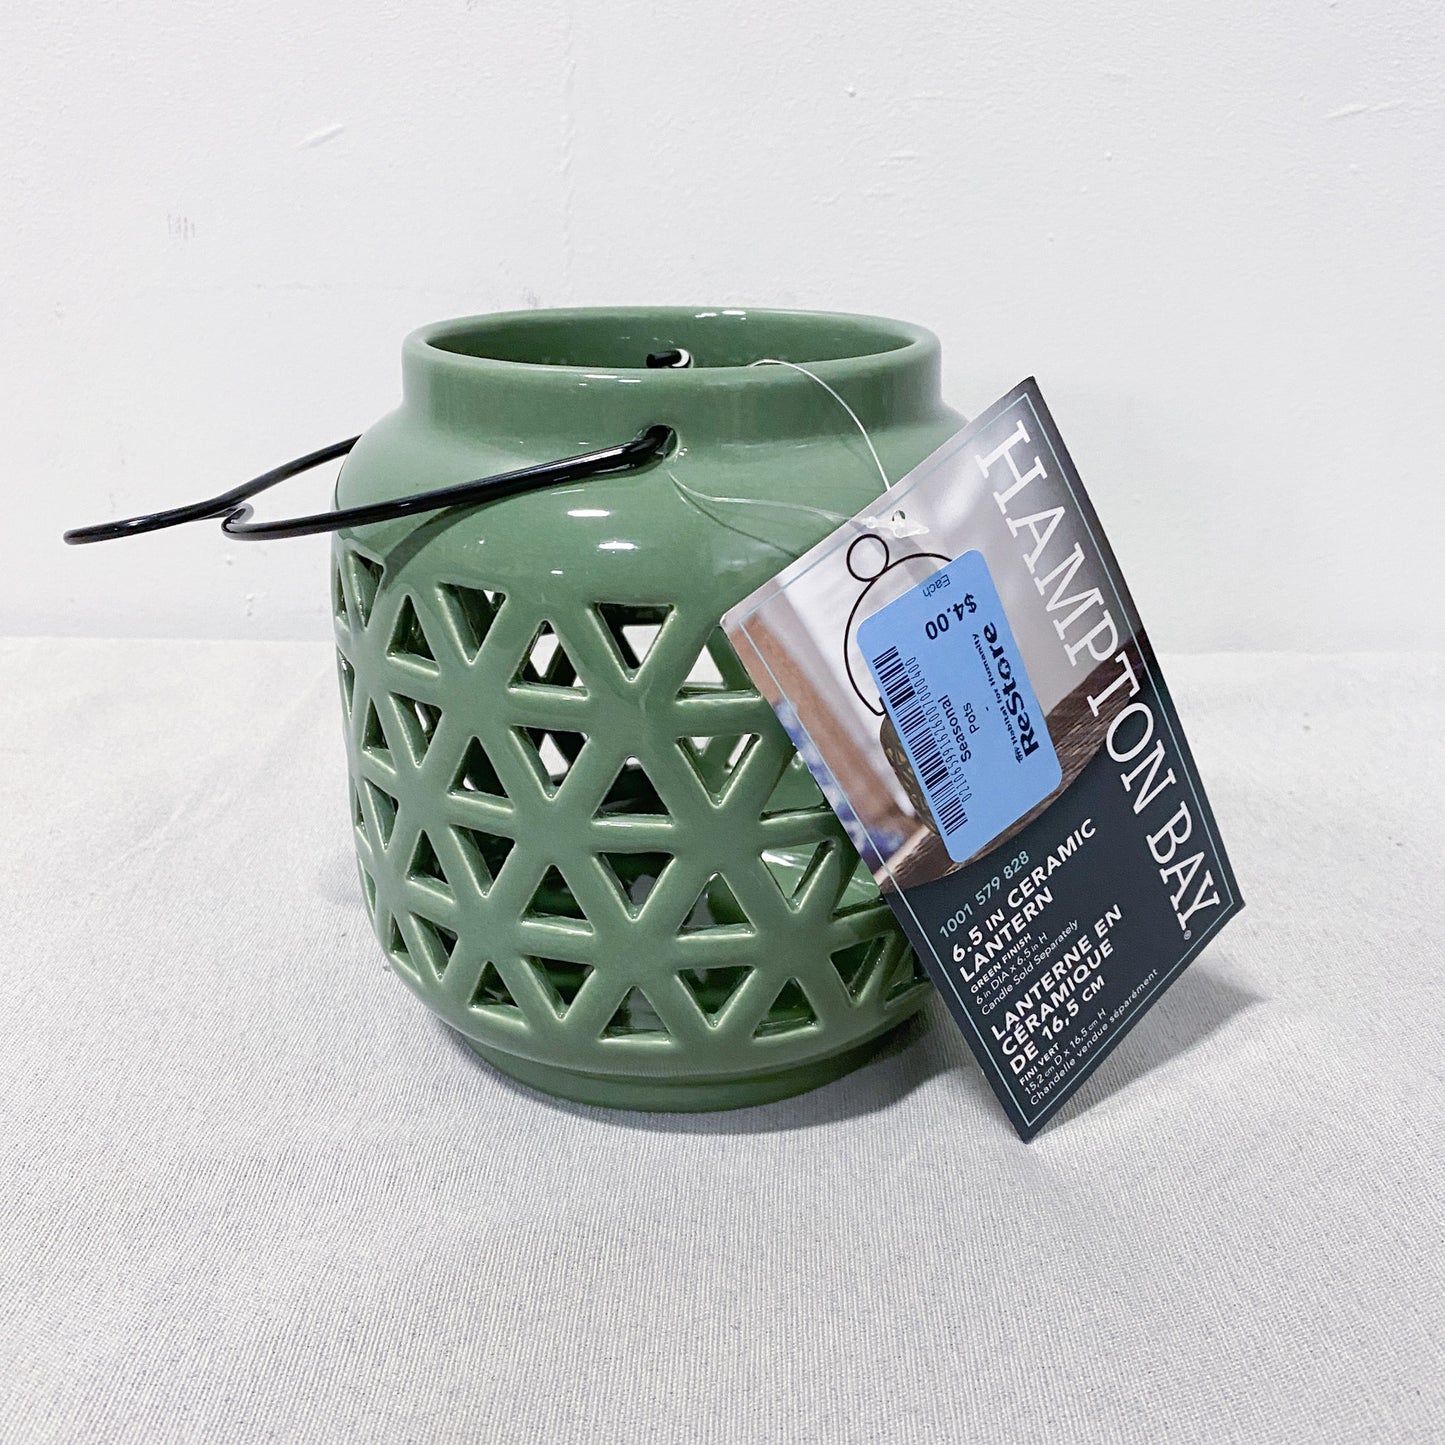 6.5" Green Ceramic Lantern